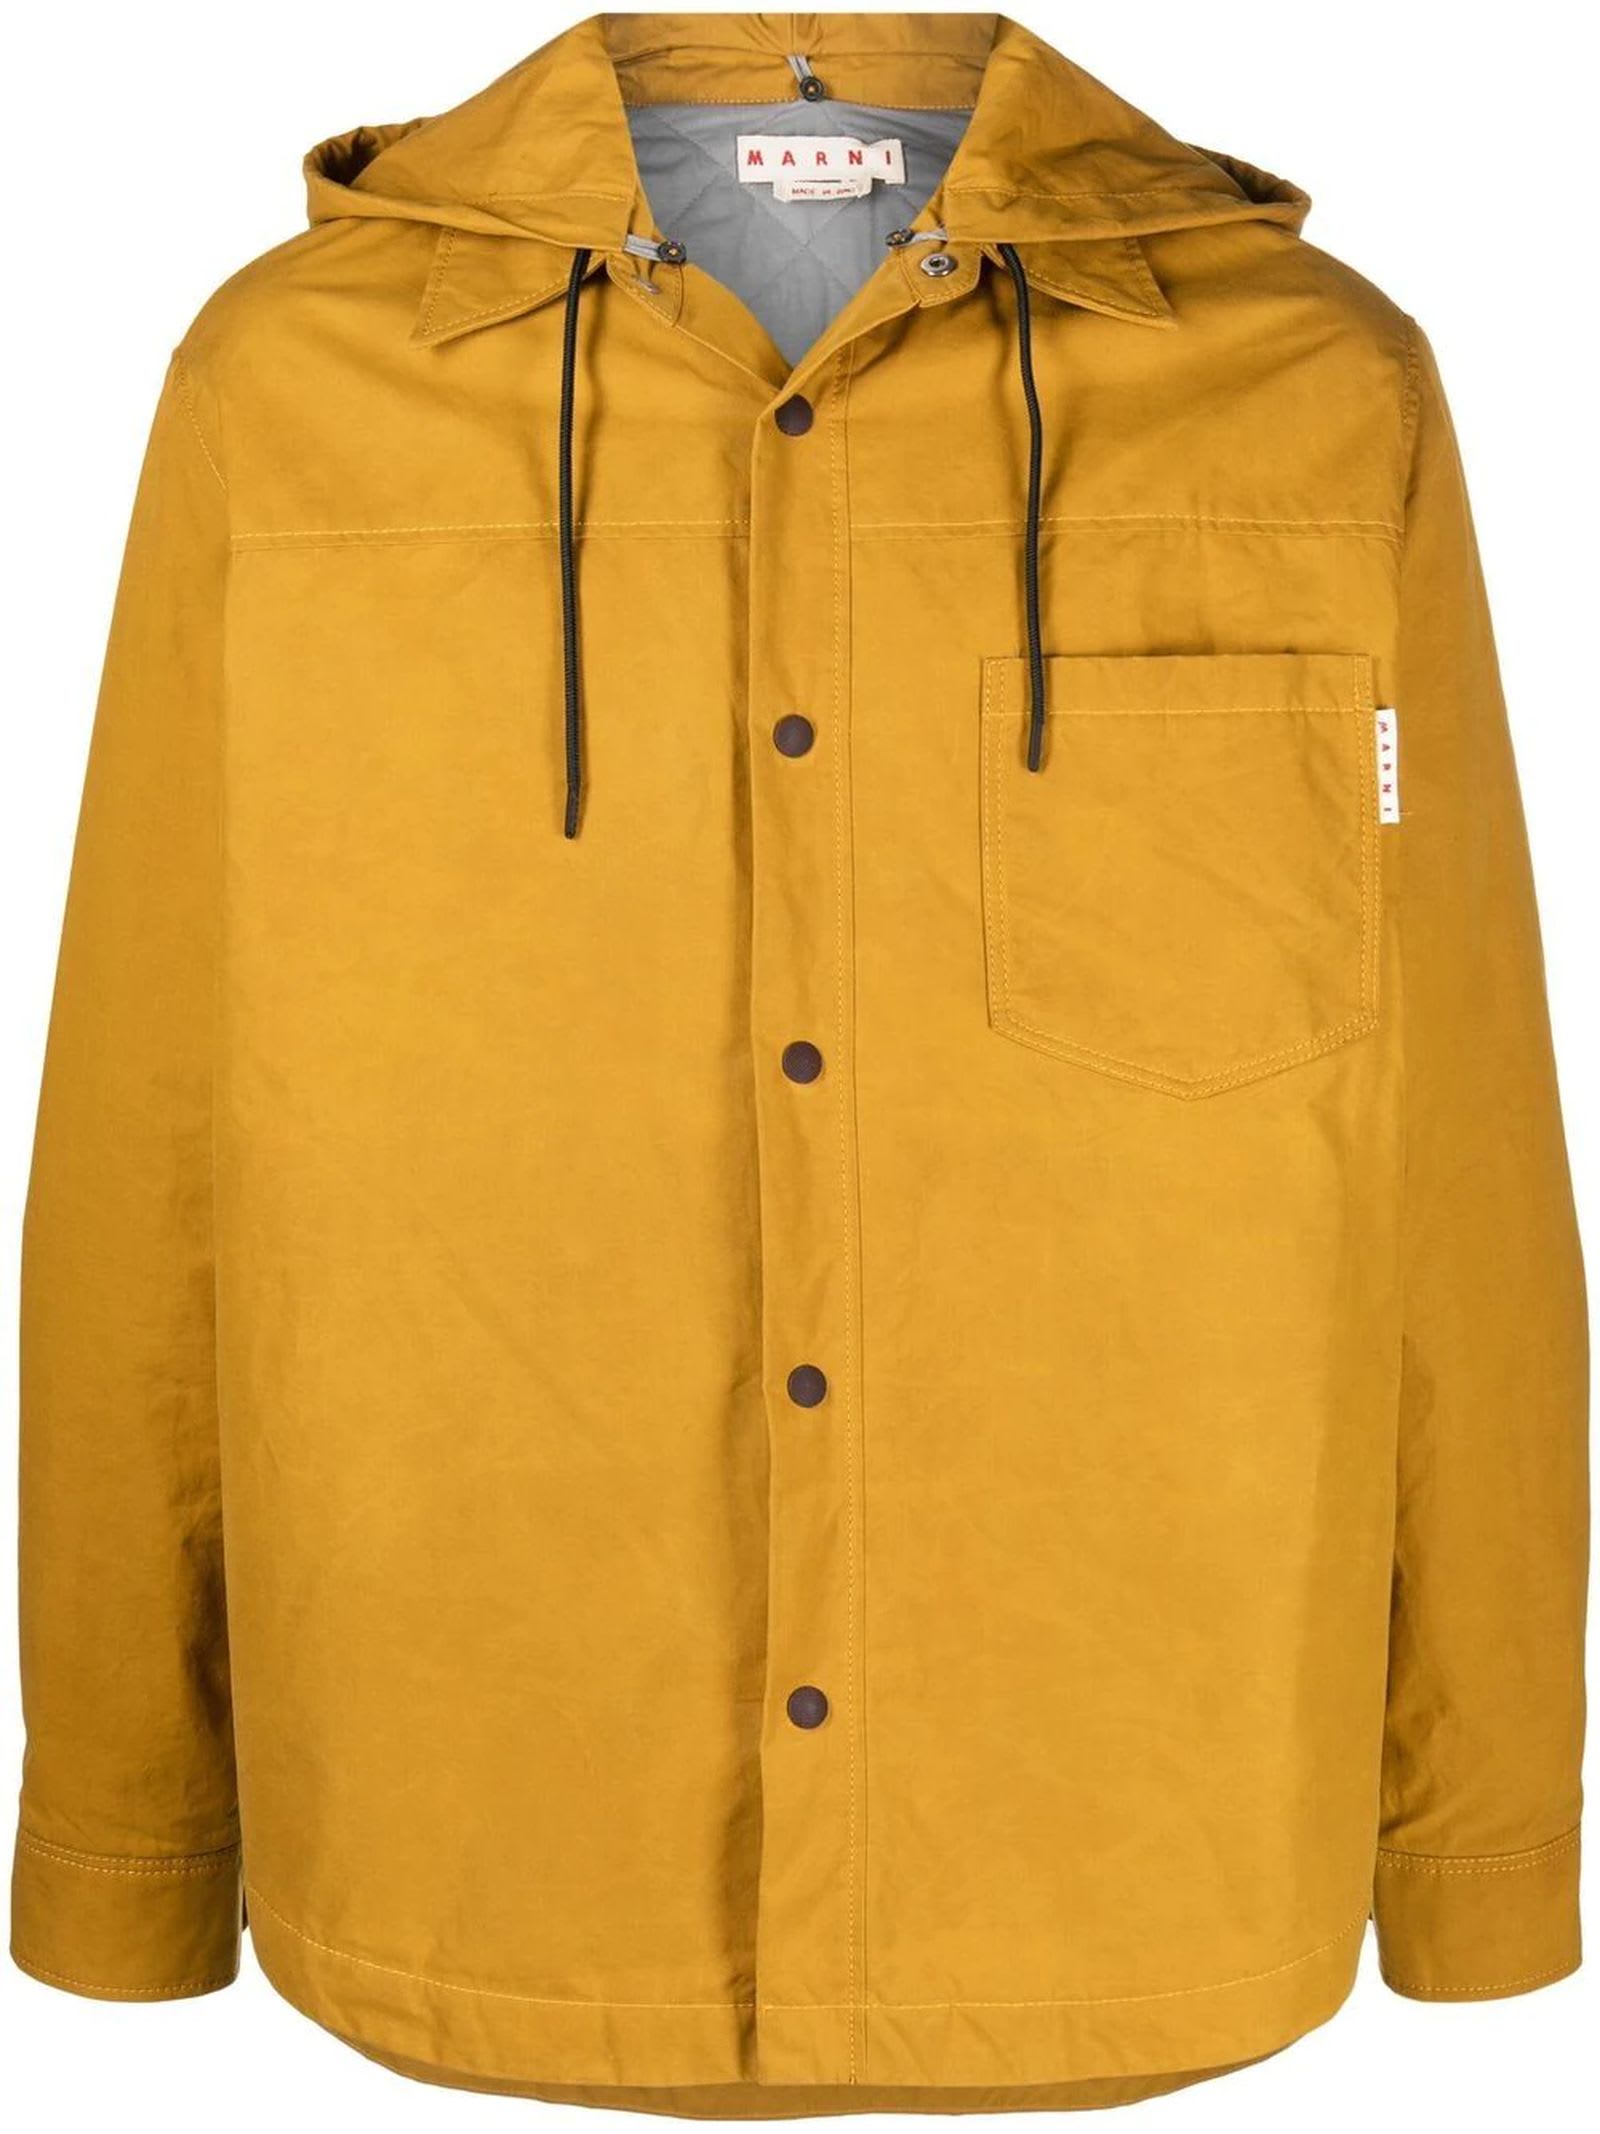 Marni Mustard Yellow Cotton Jacket